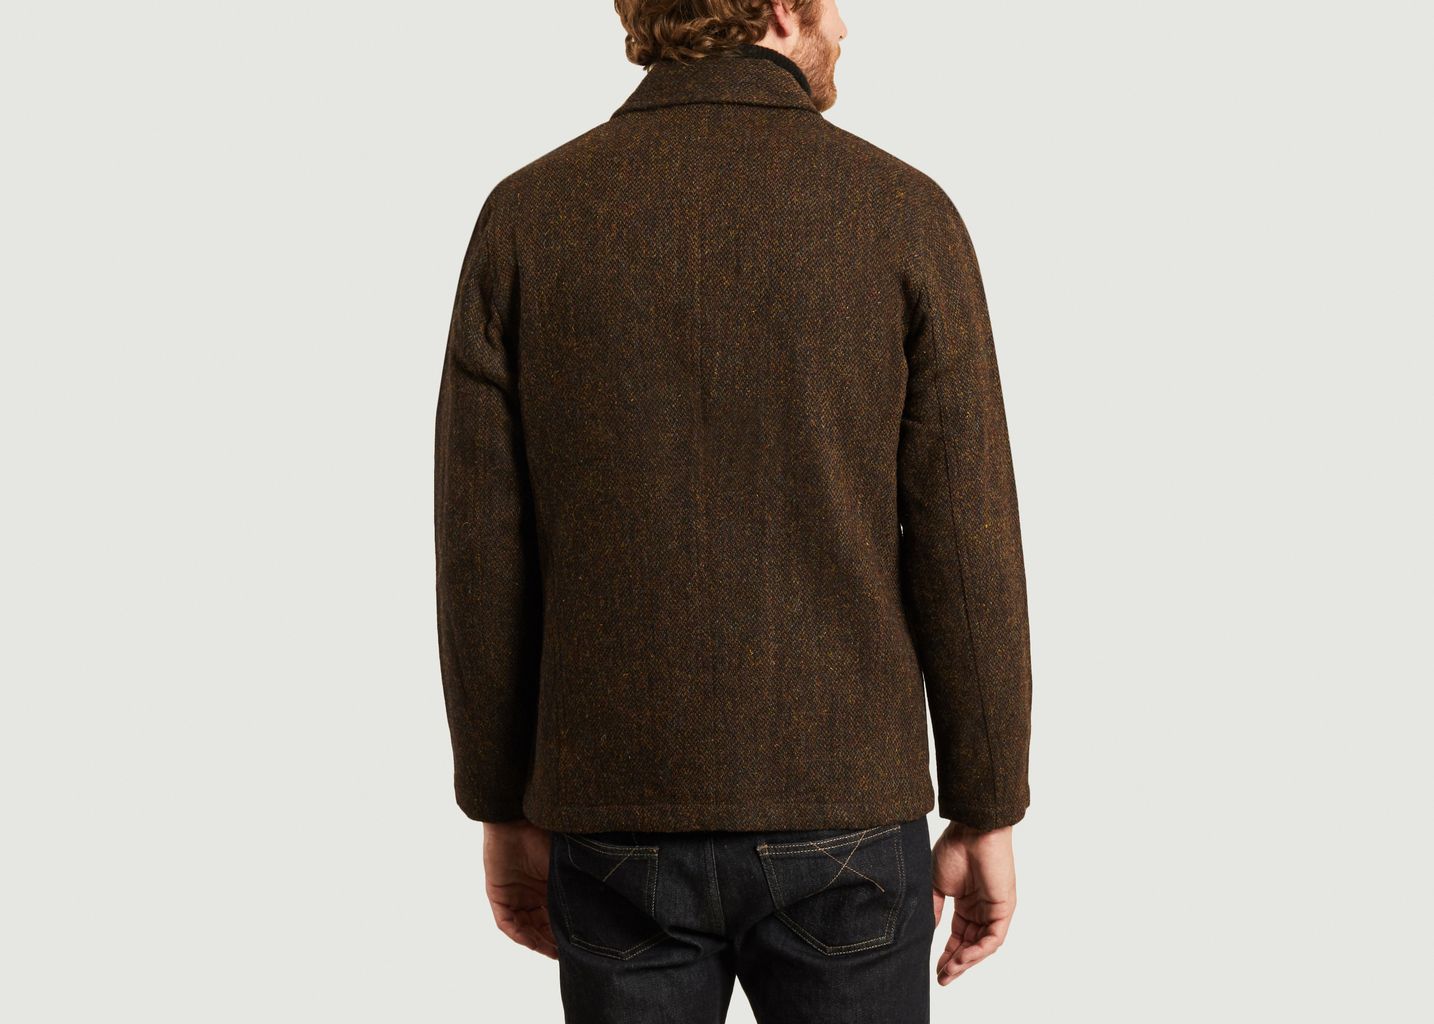 Harris tweed jacket - Universal Works